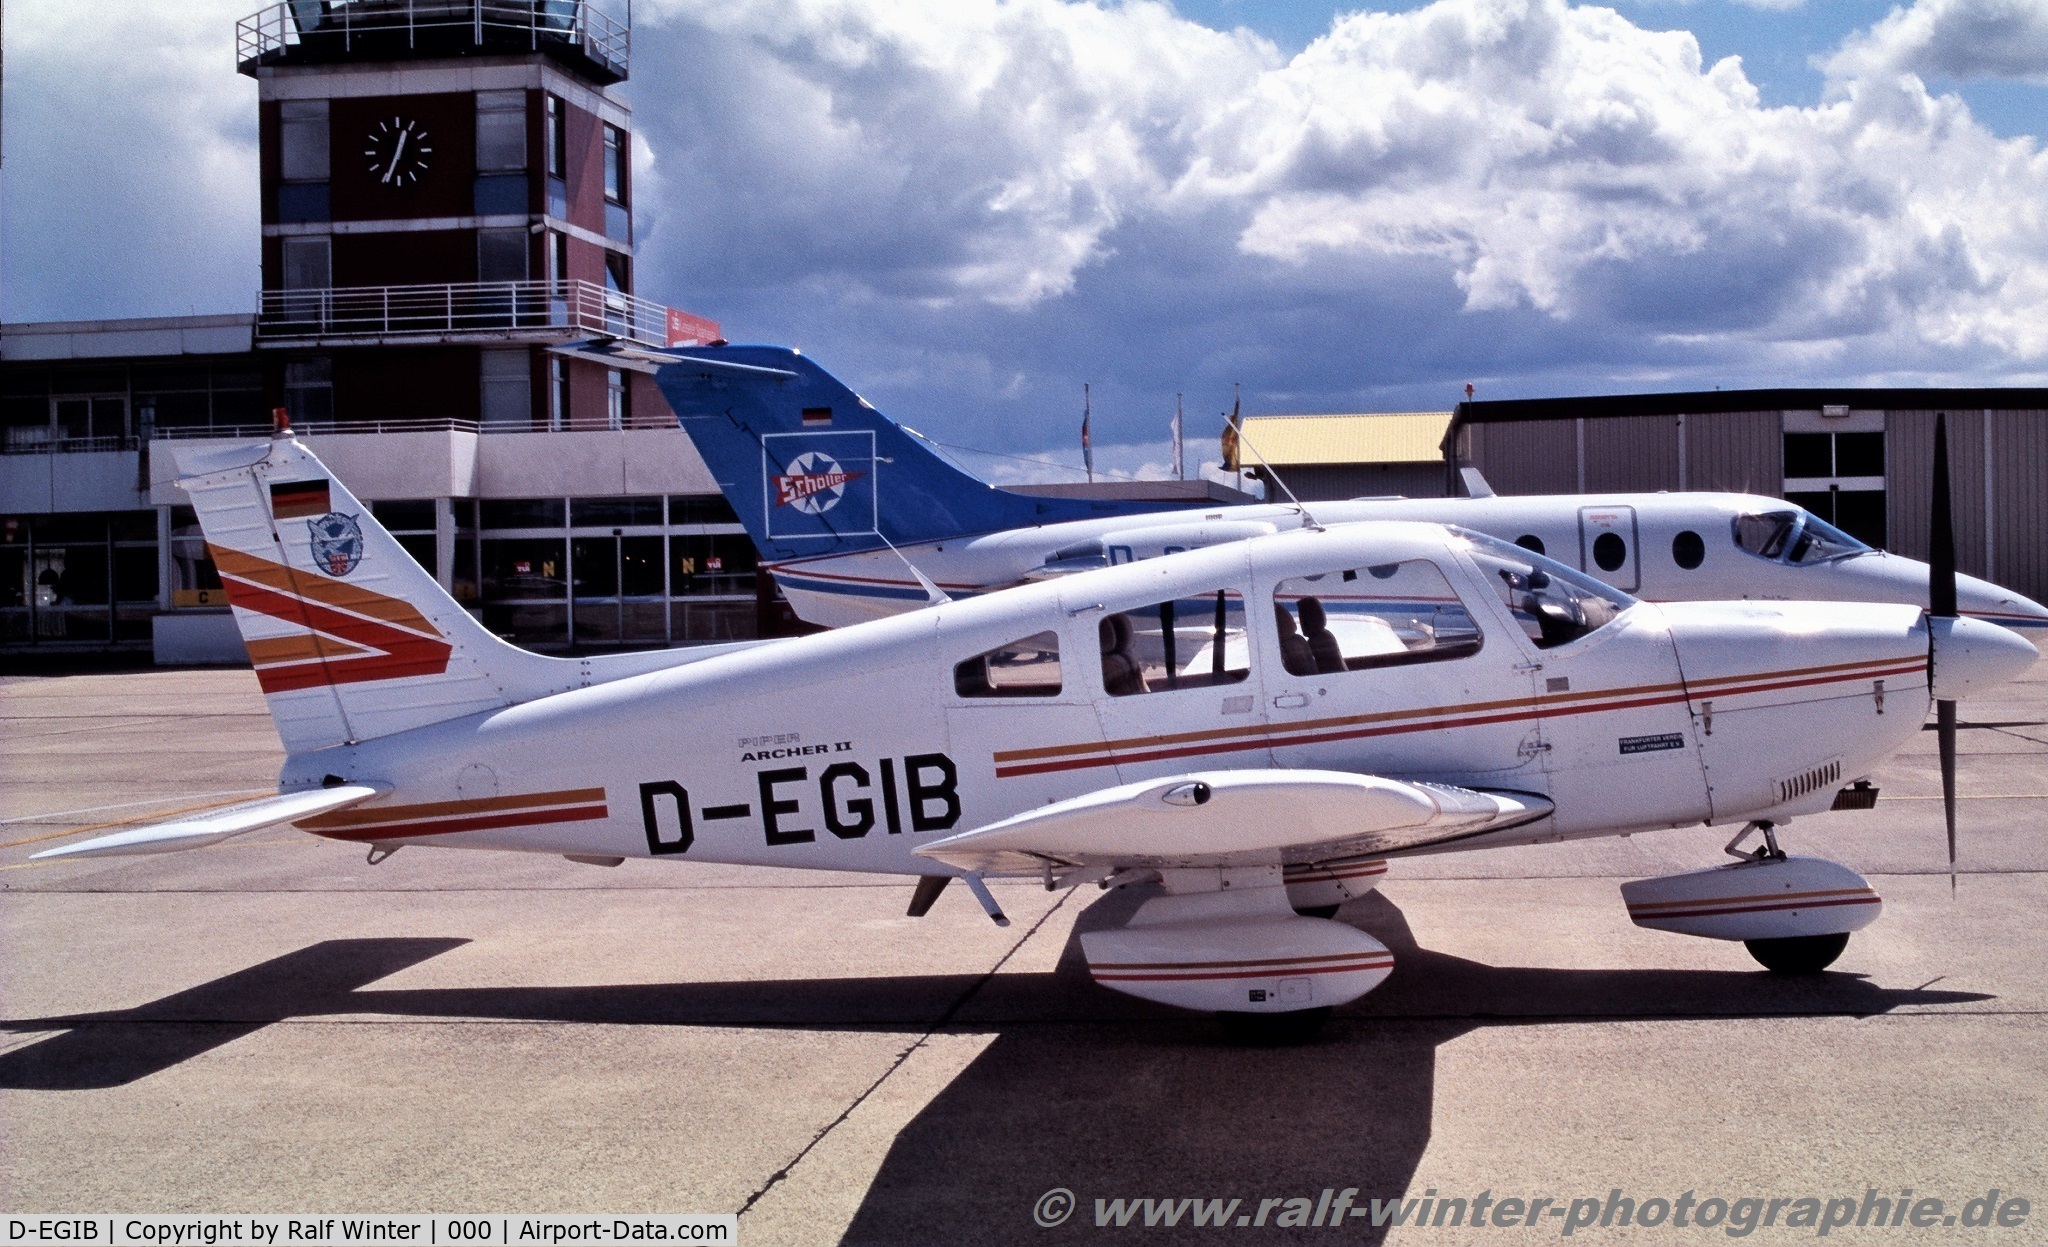 D-EGIB, 1980 Piper PA-28-181 Cherokee Archer II C/N 28-8190017, Piper PA-28-181 Archer II - Frankfurter Verein für Luftfahrt - 28-8190017 - D-EGIB